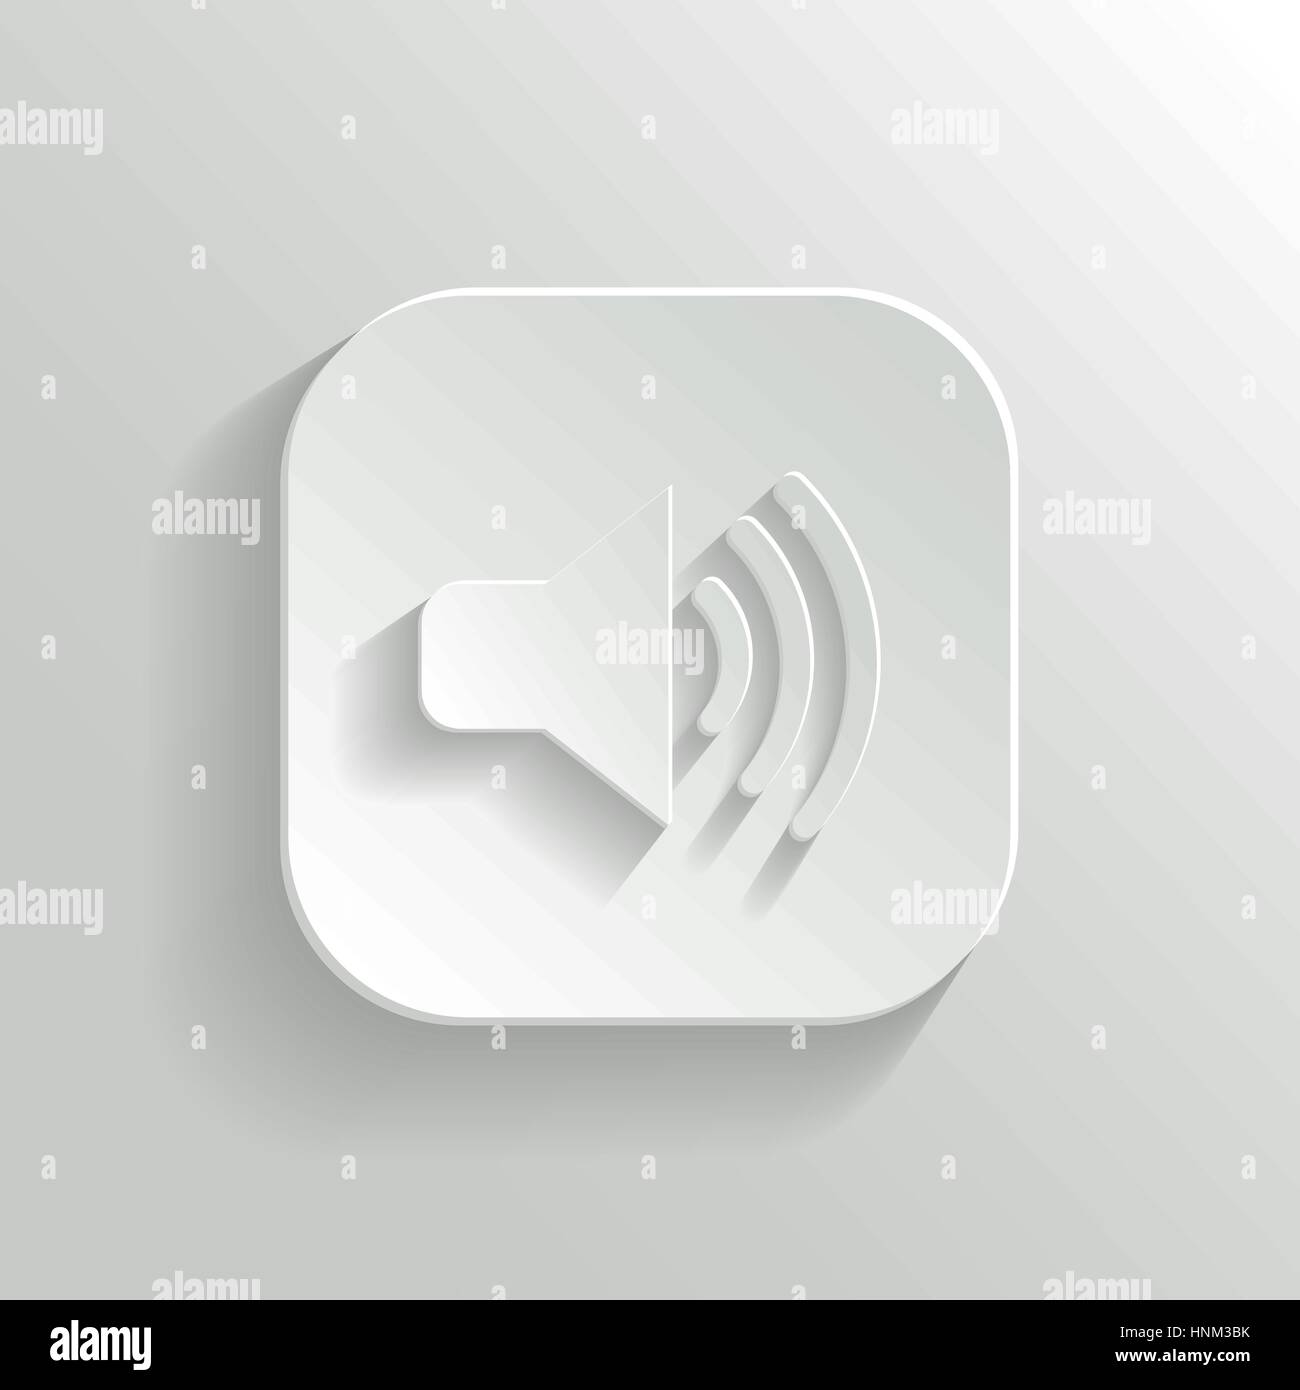 Lautsprecher-Symbol - Taste "Vektor weiße app" mit Schatten Stock Vektor